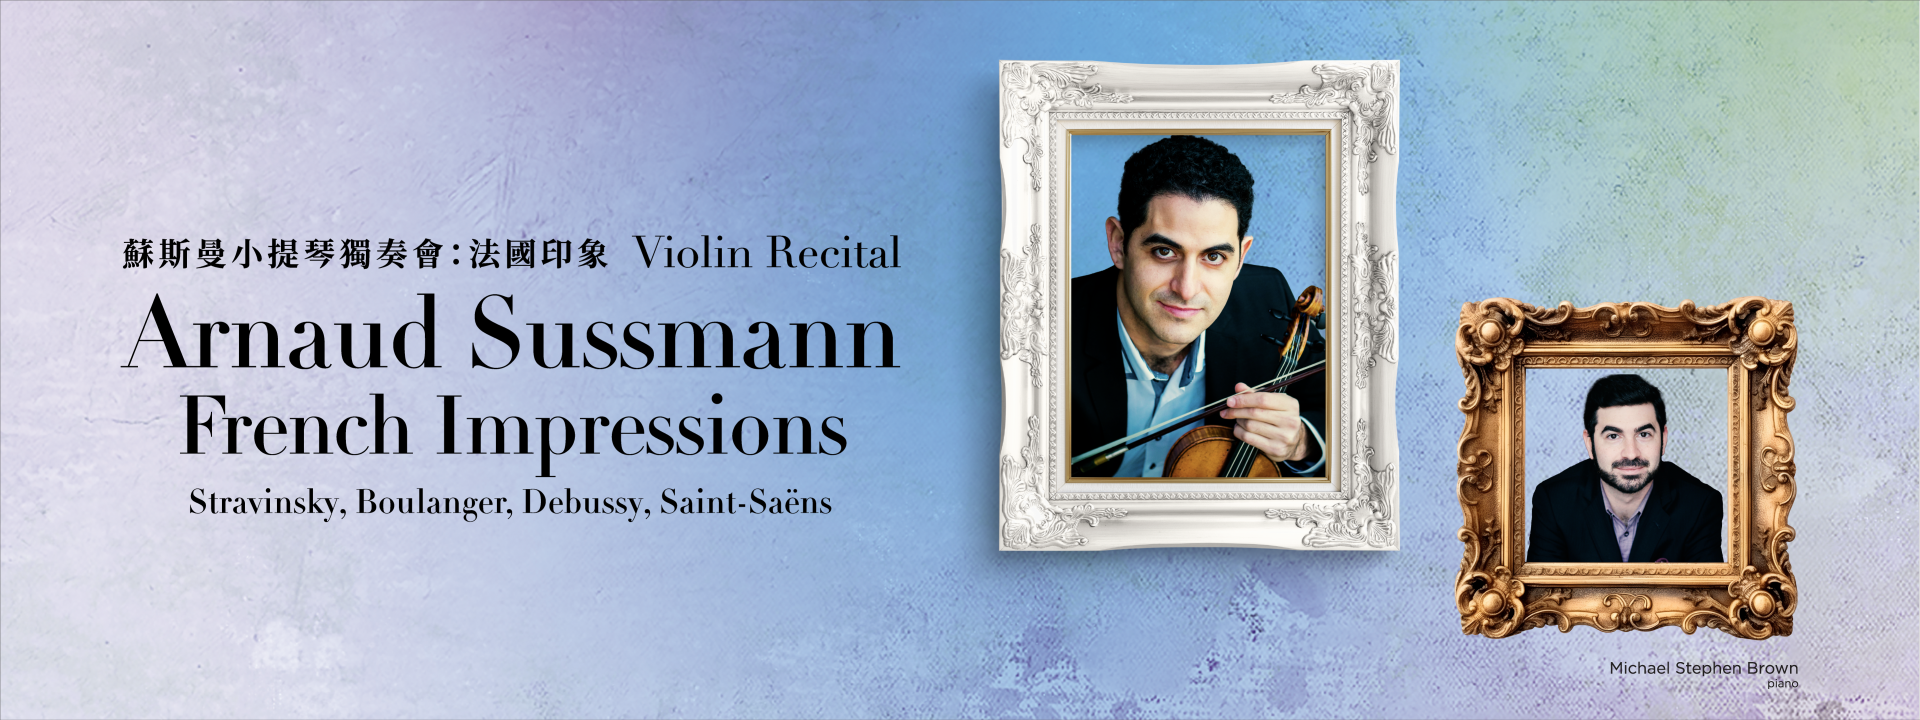 Arnaud Sussmann Violin Recital: French Impressions